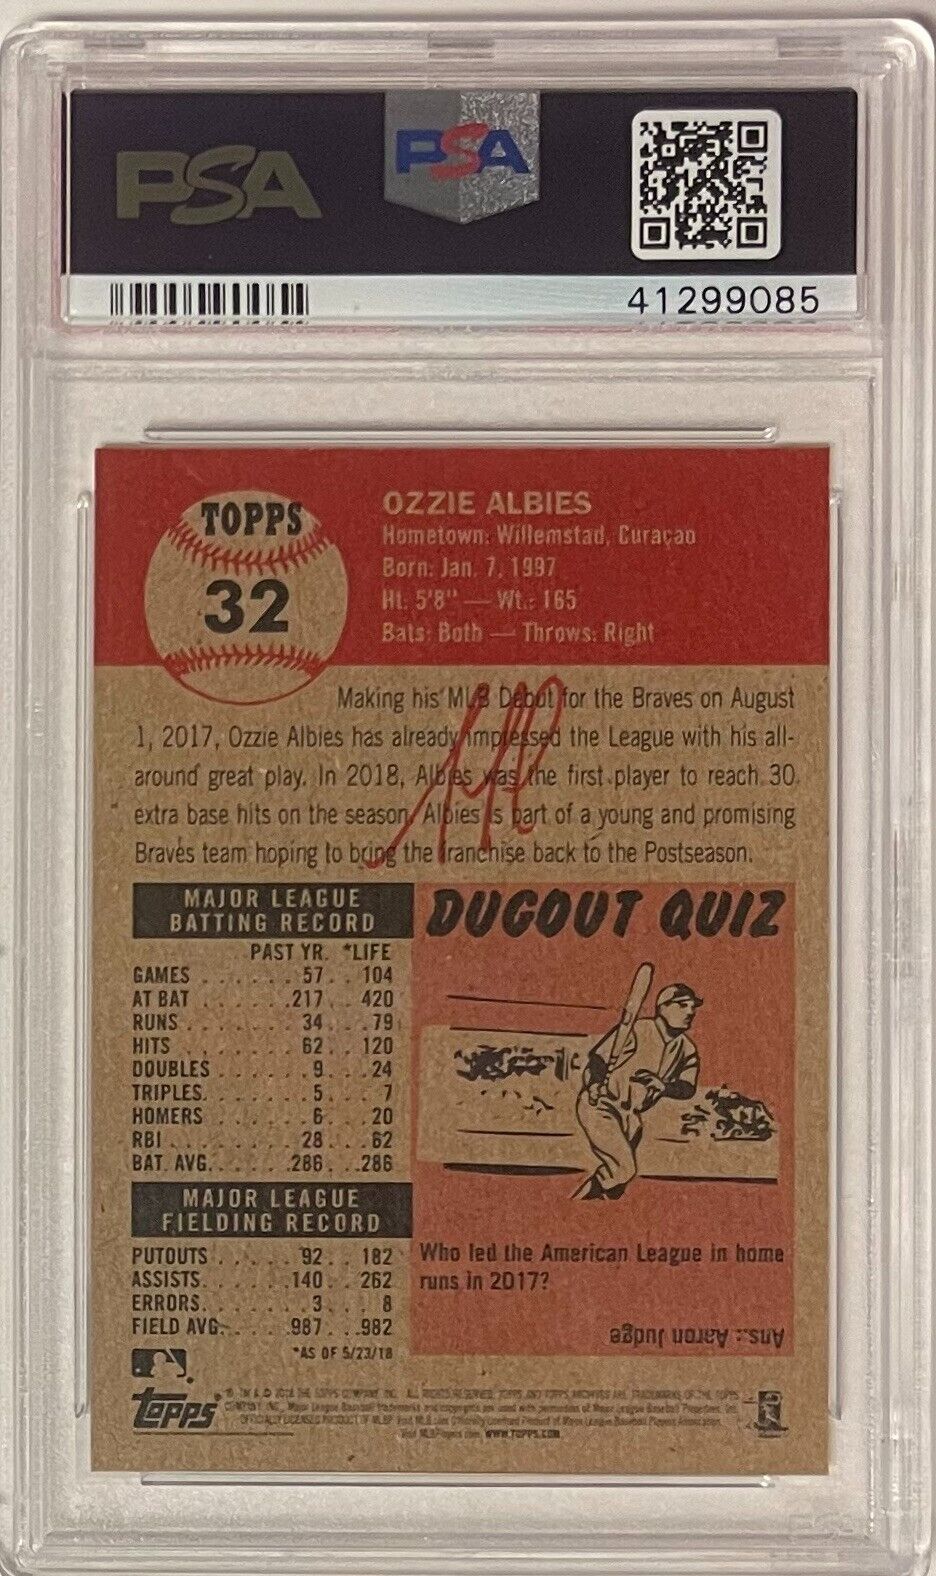 Ozzie Albies 2018 Topps Living Baseball Card #32- PSA Graded 10 Gem Mint- Braves Image 2